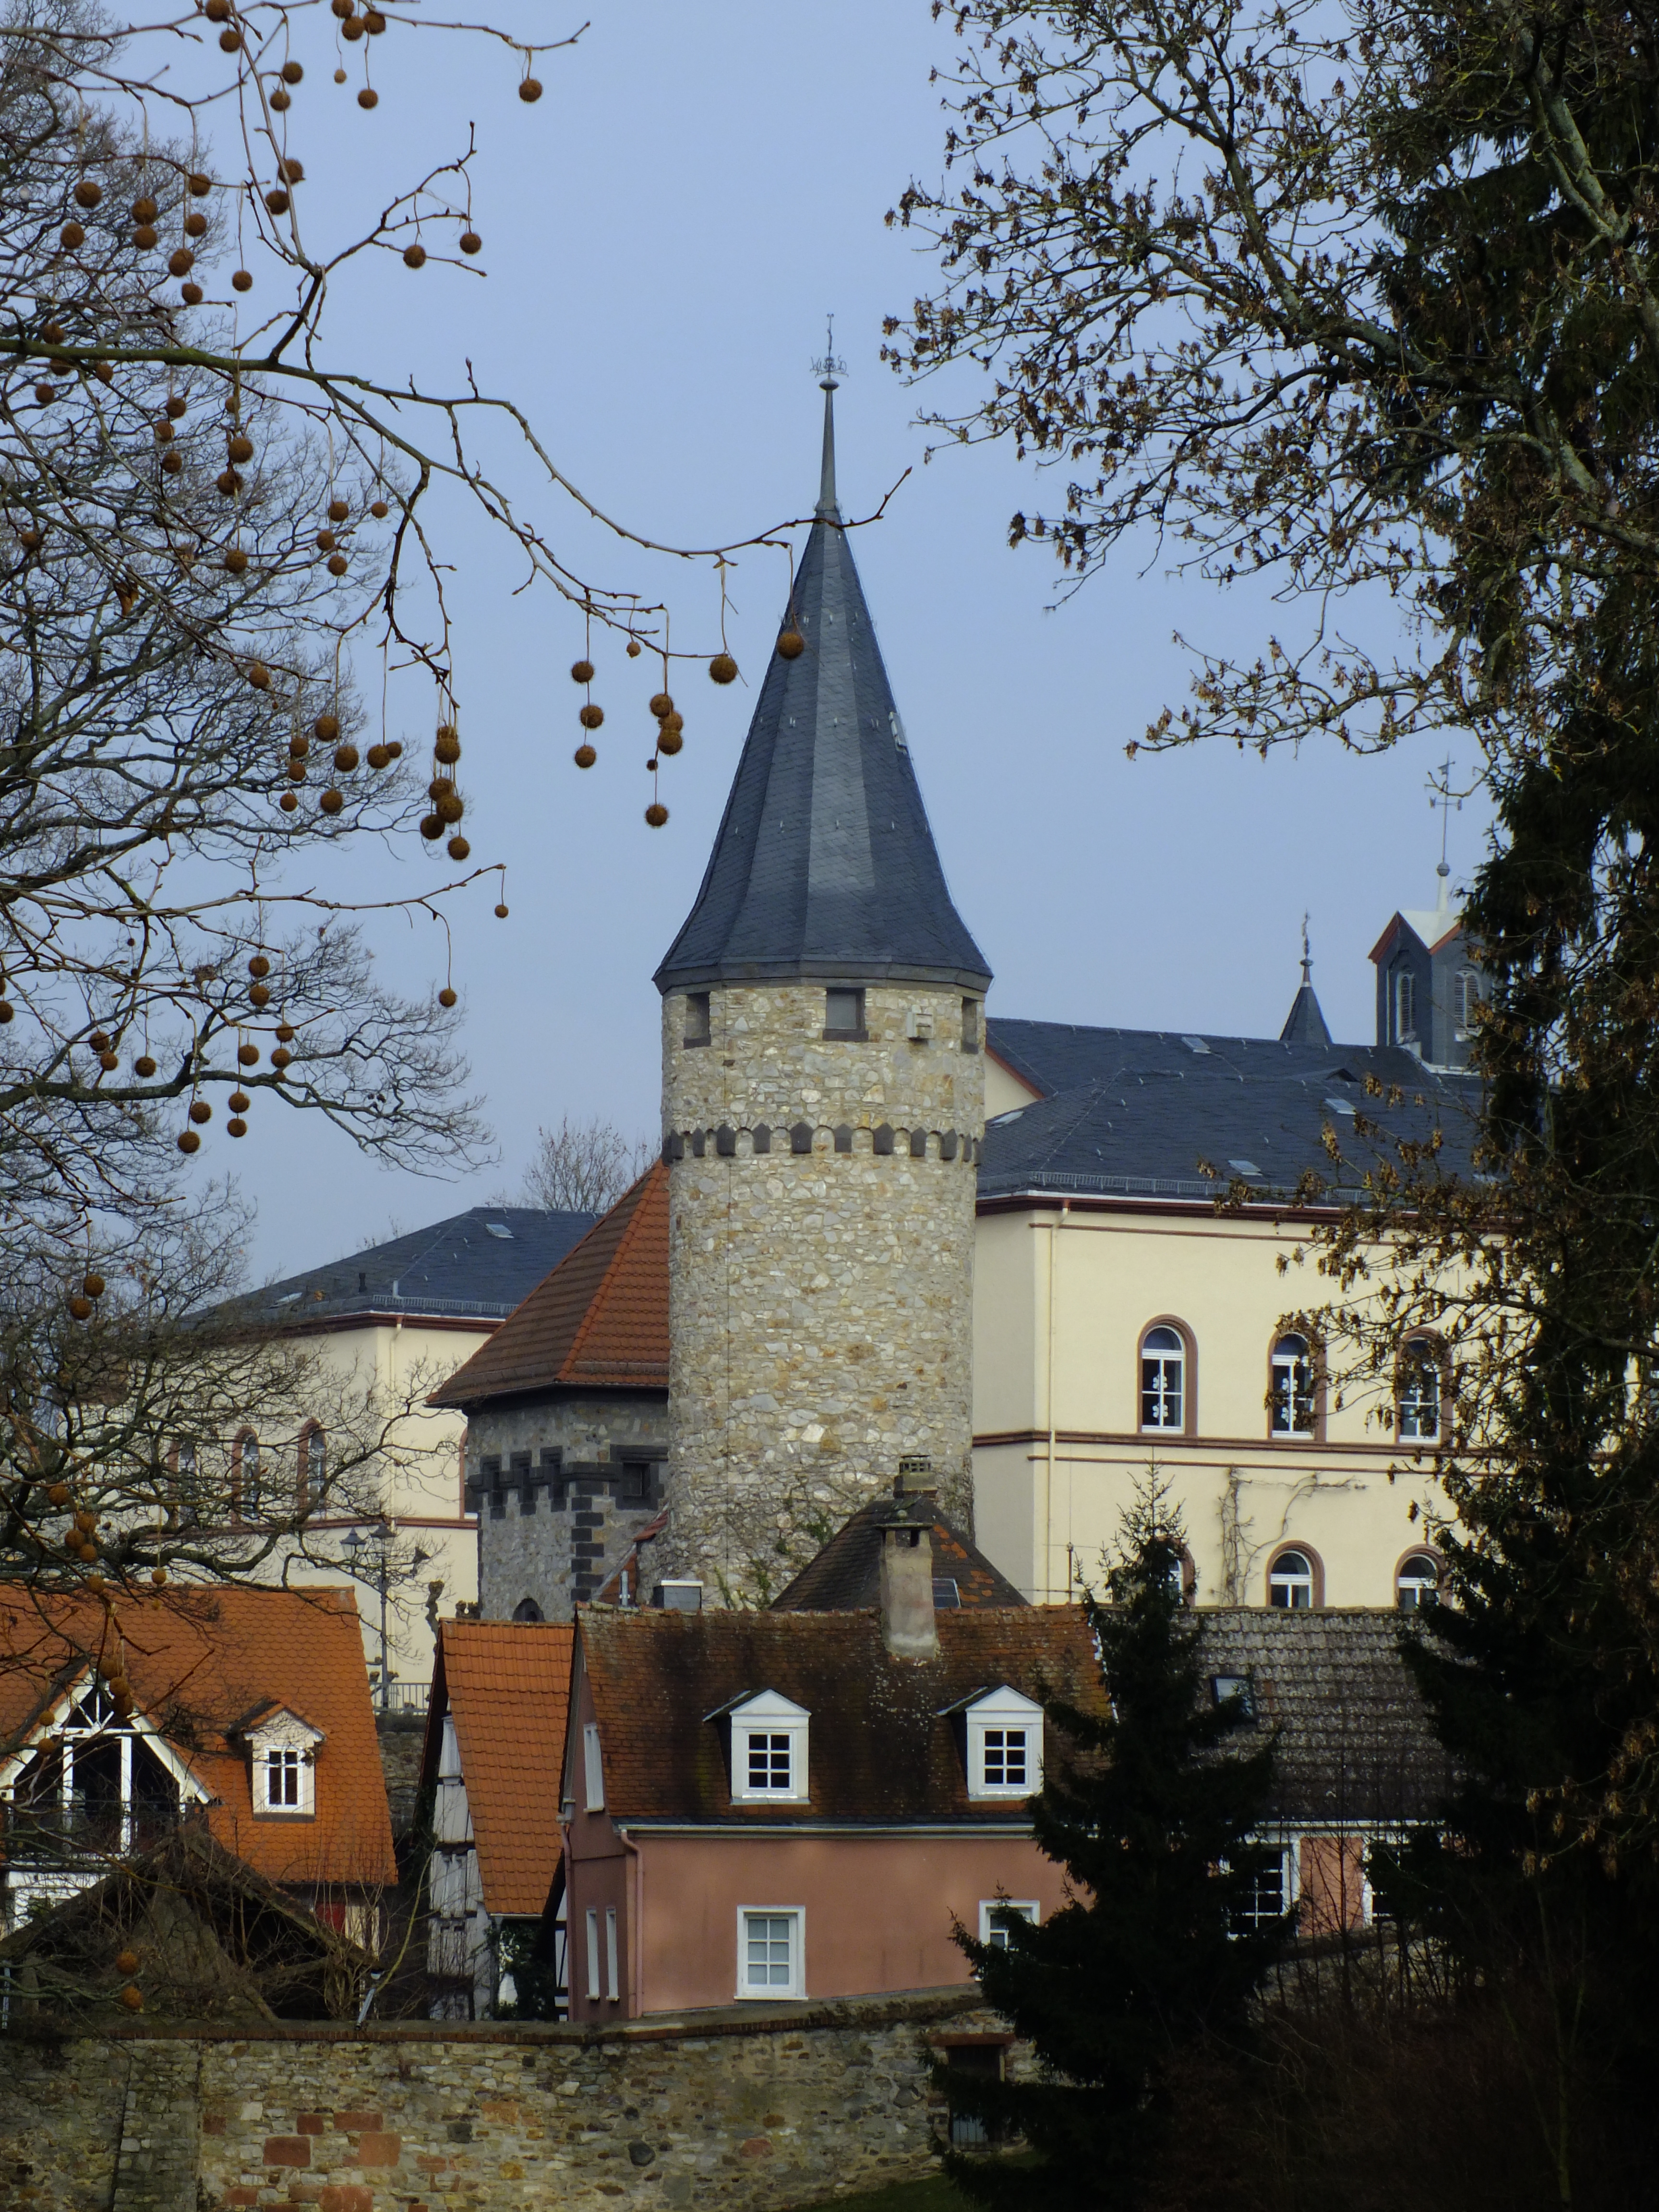 Hexenturm und Altstadt von Bad Homburg